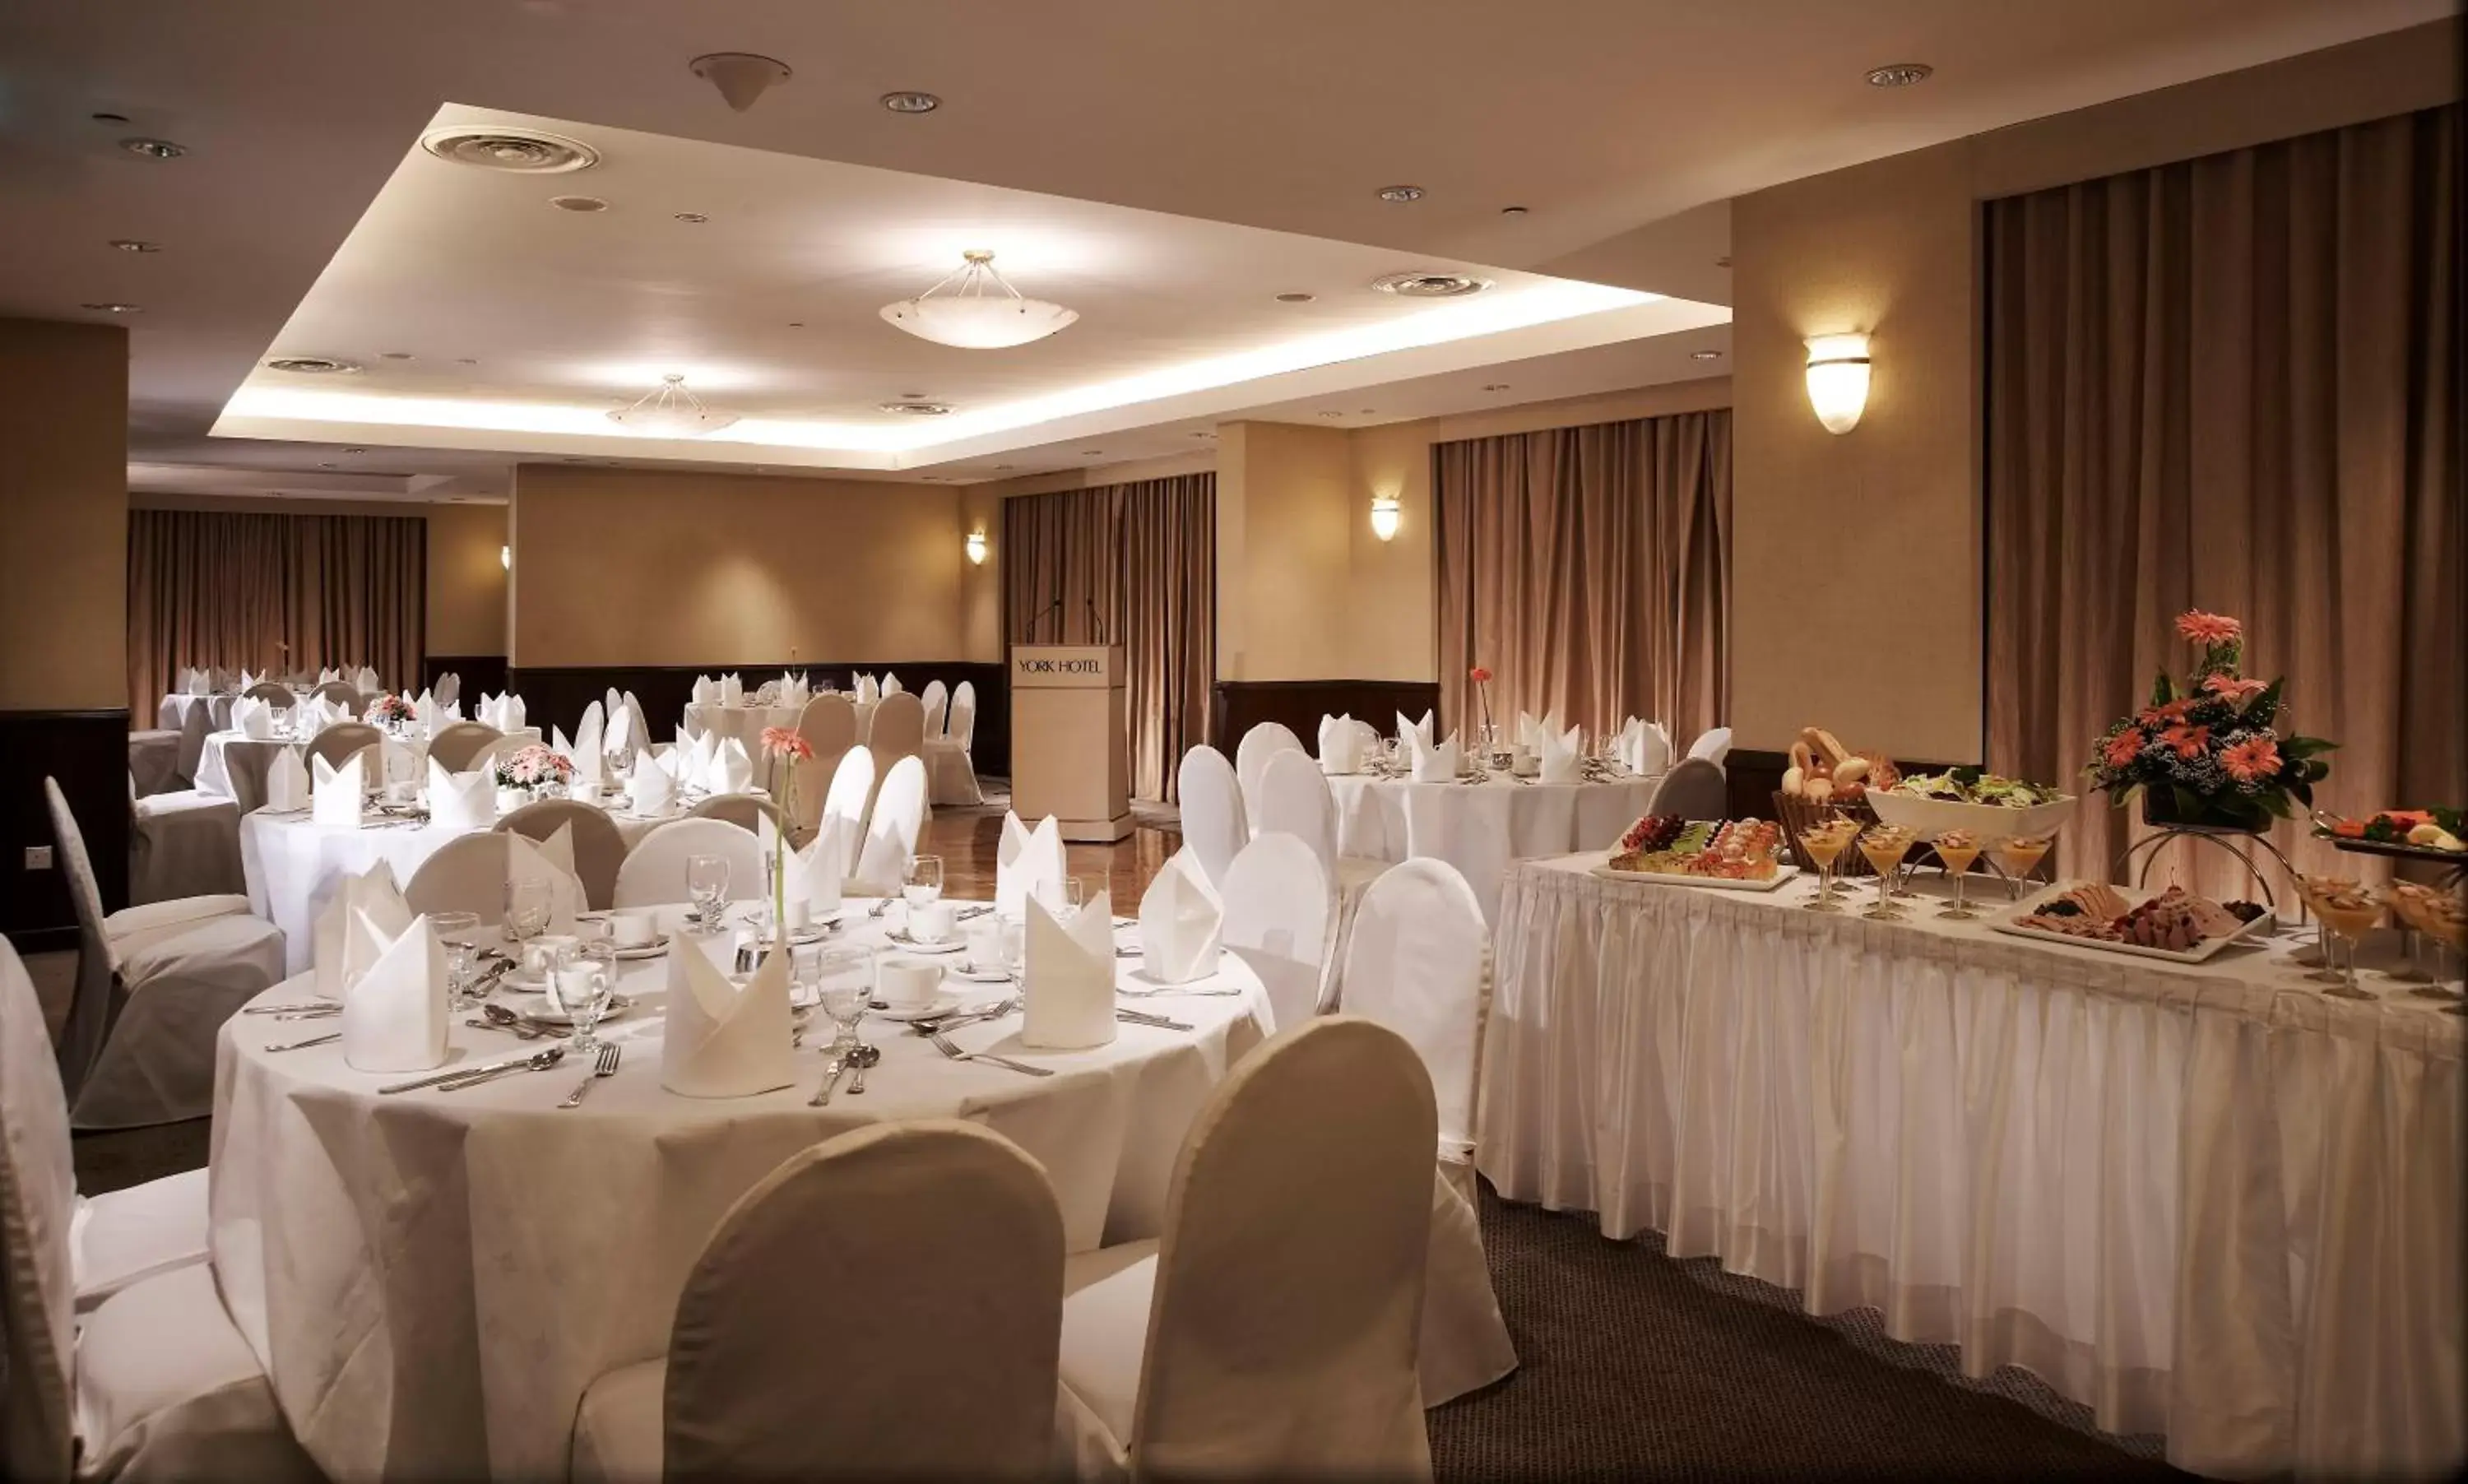 Banquet/Function facilities, Banquet Facilities in York Hotel